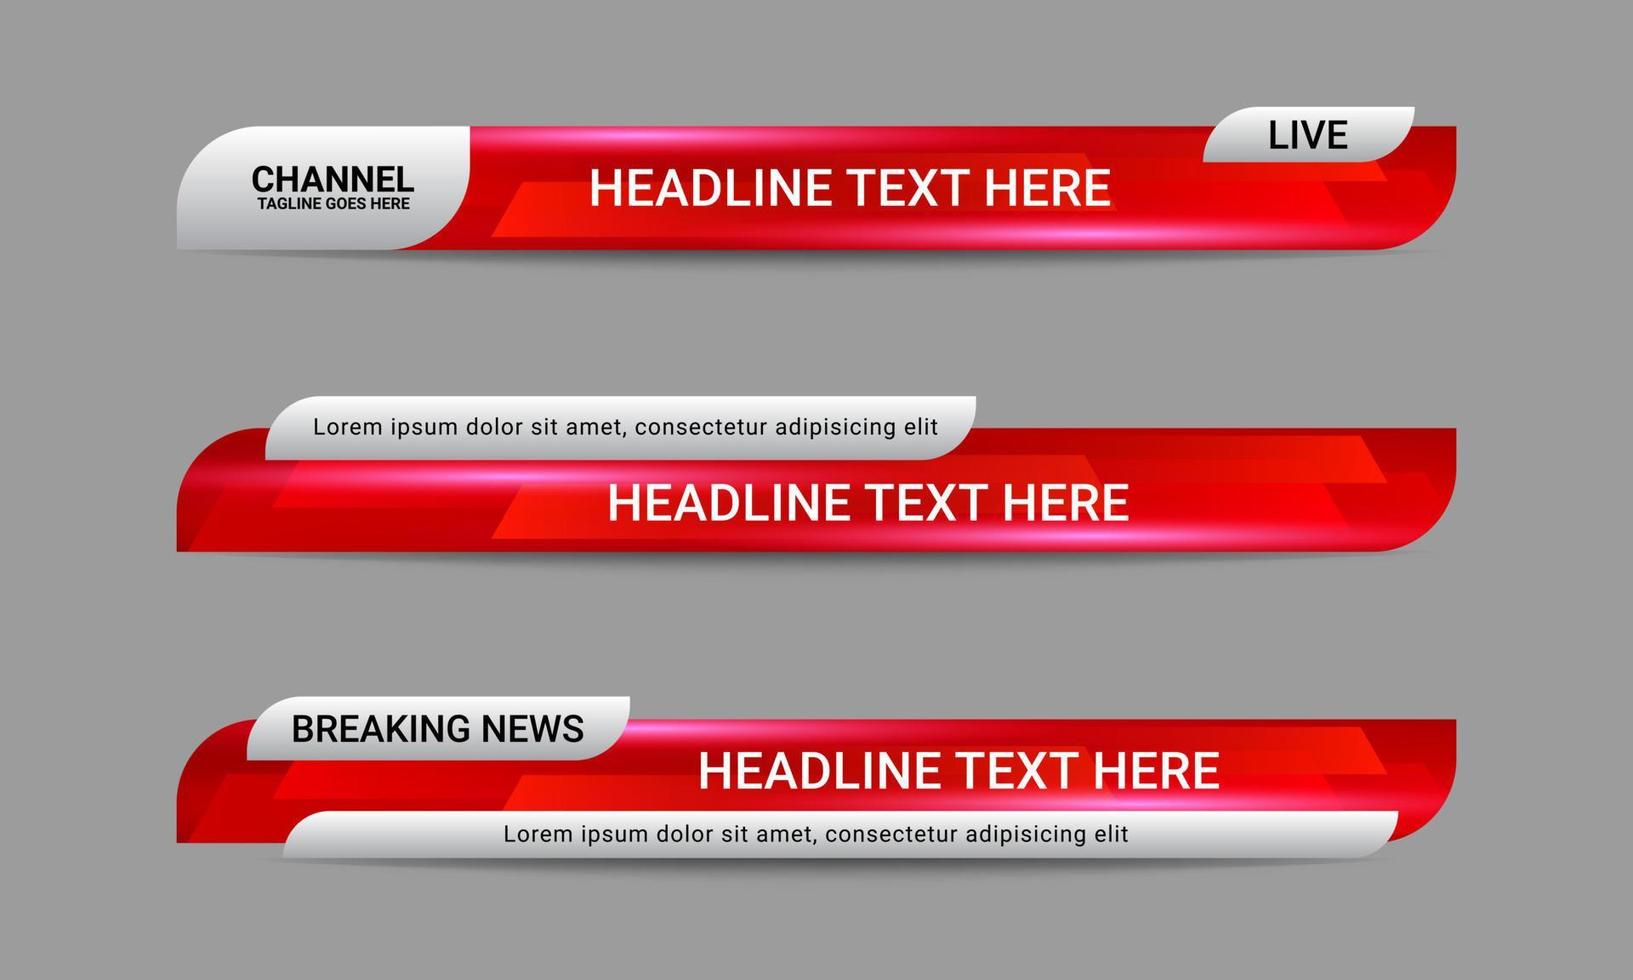 conjunto de modelos de terceiro banner inferior de notícias de transmissão para canais de televisão, vídeo e mídia. vetor de design de layout de barra de manchete futurista